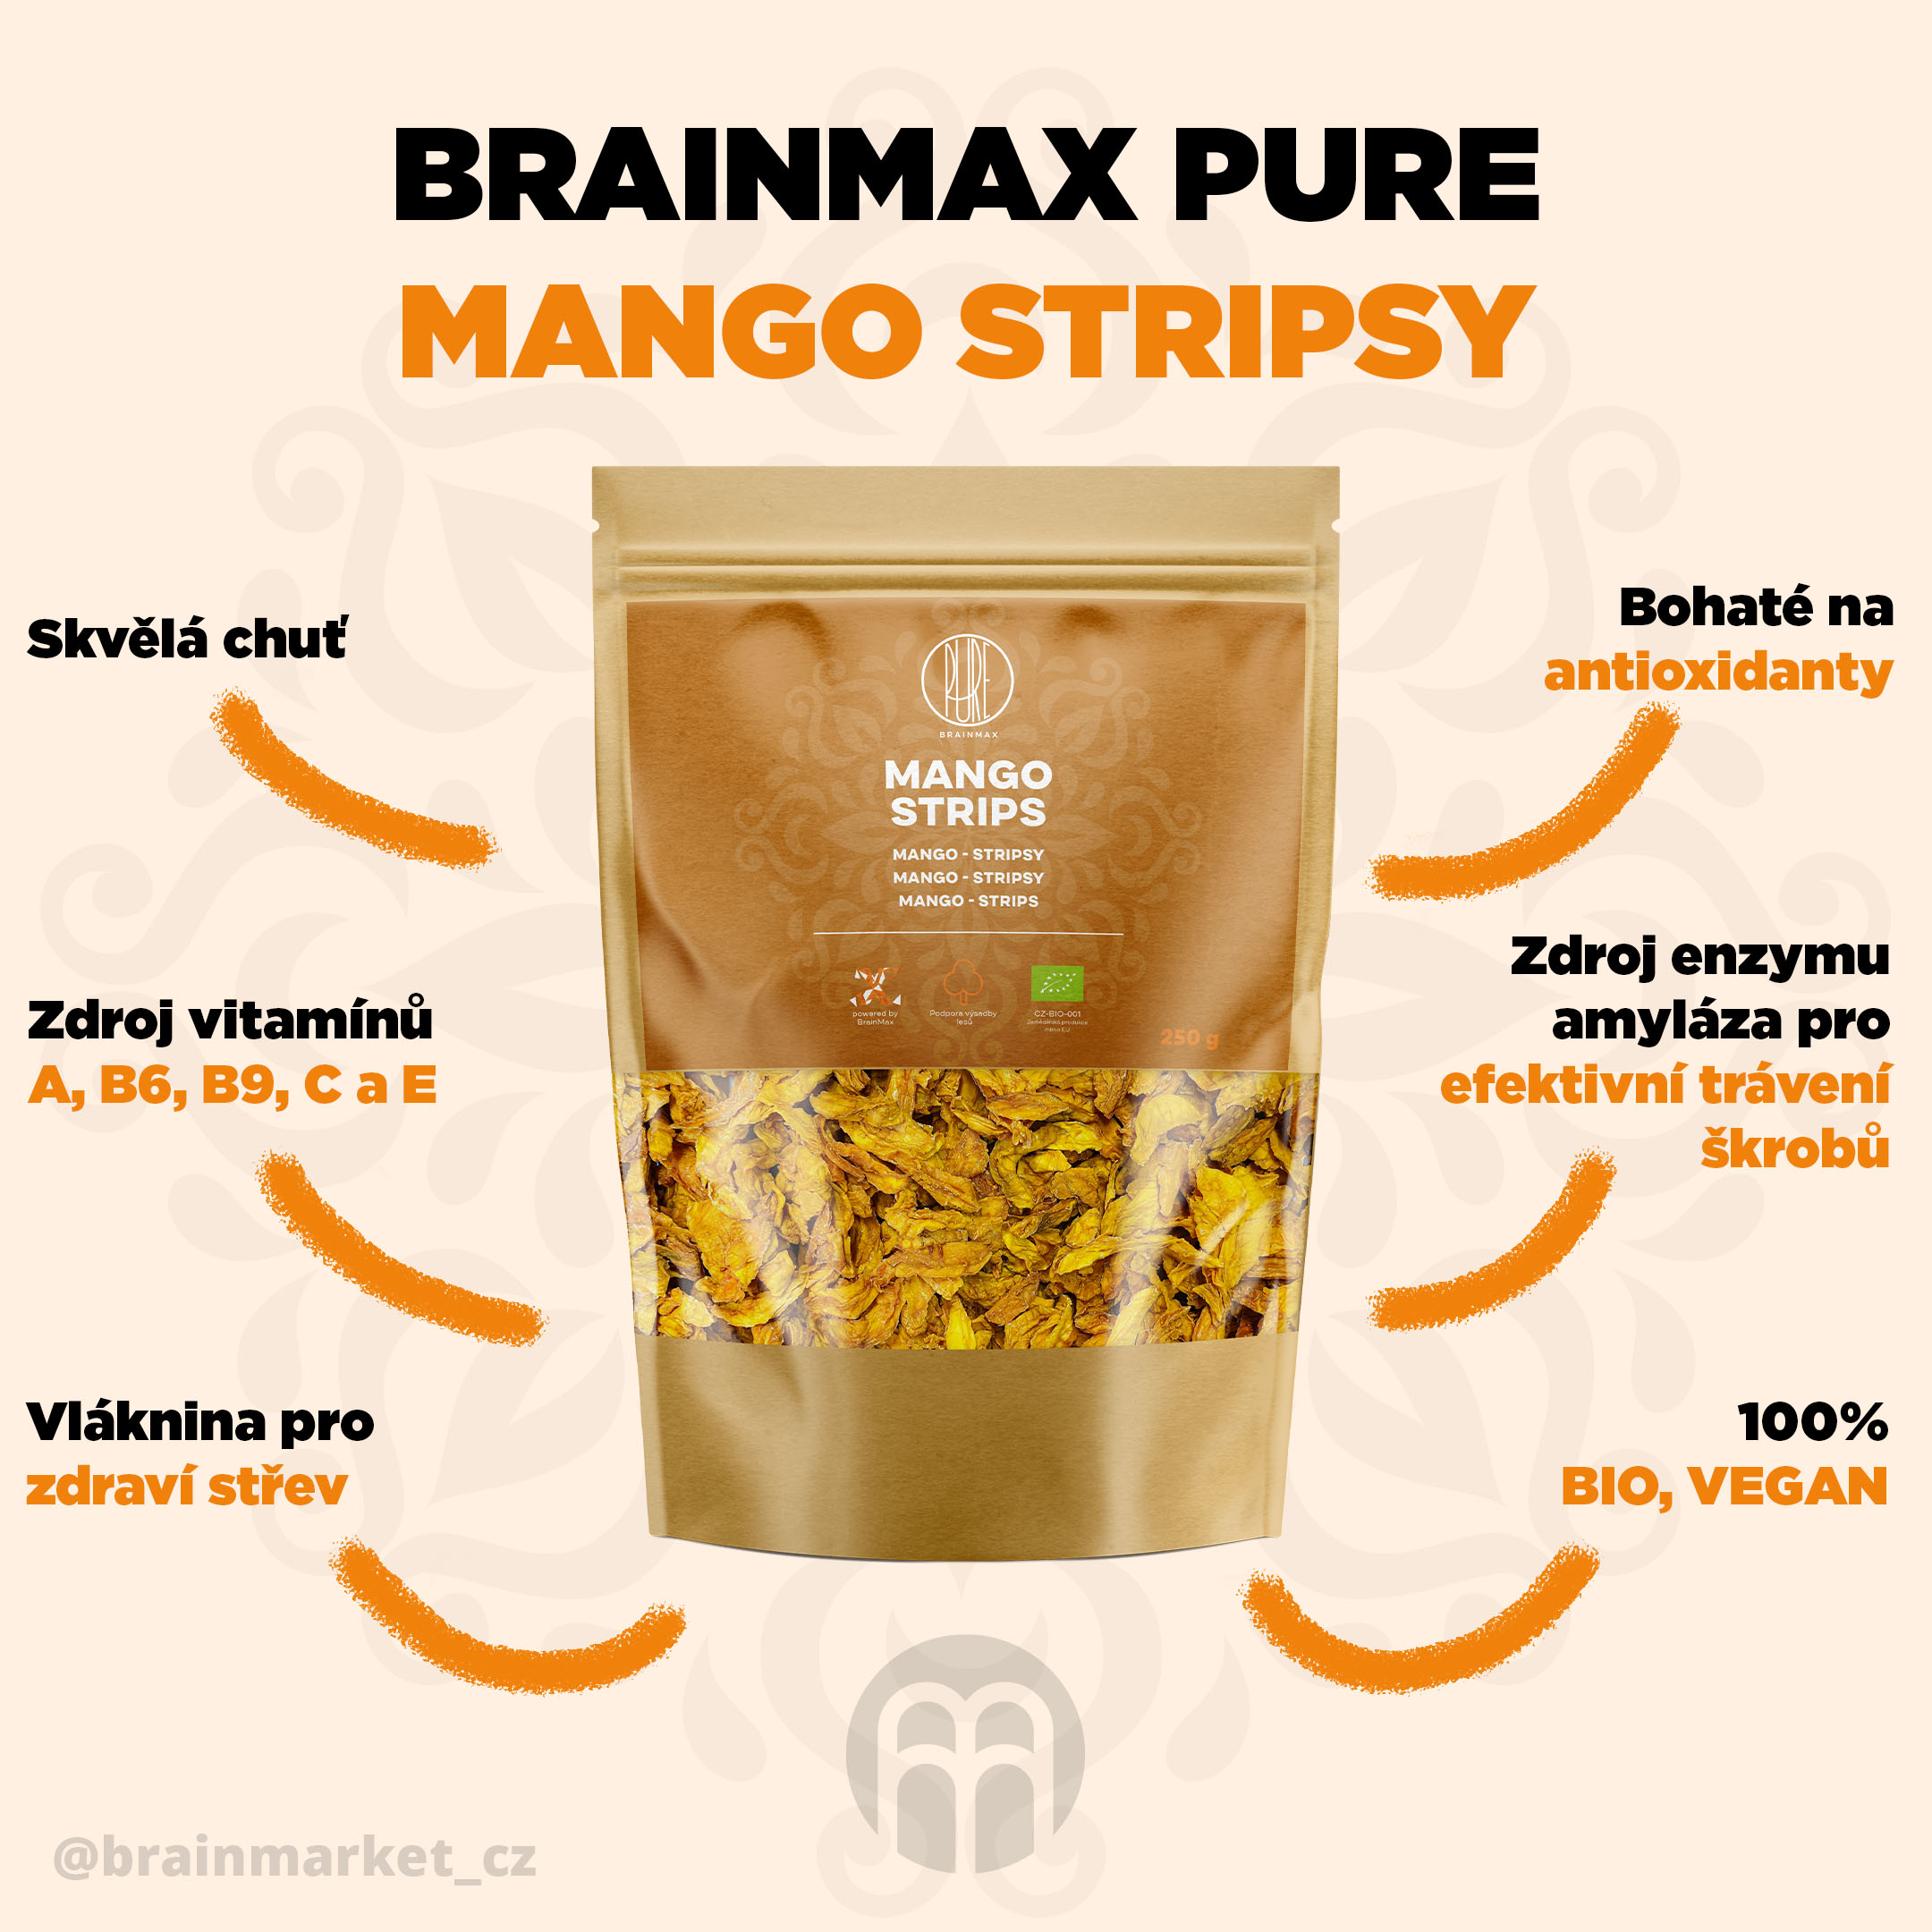 brainmax pure mango stripsy infografika brainmarket CZ